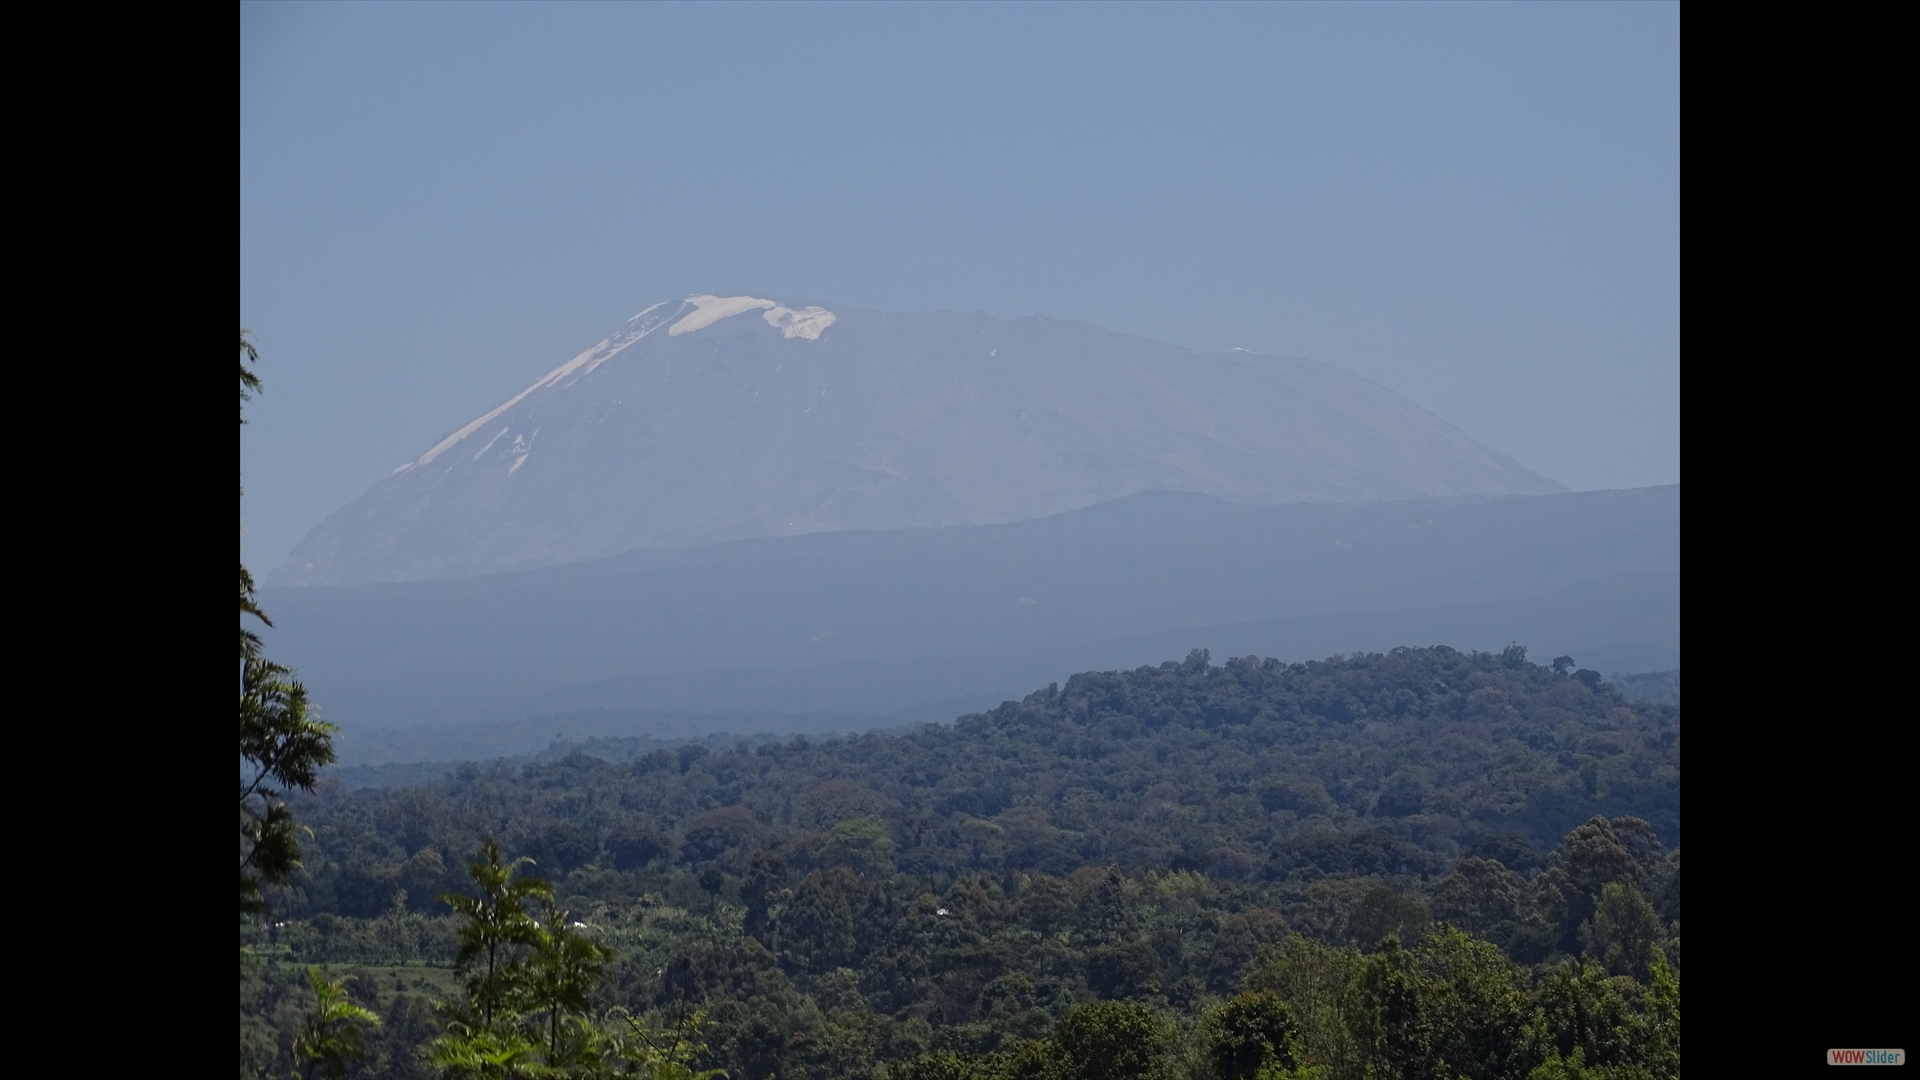 unser Ziel: Kilimandscharo, 5895 m